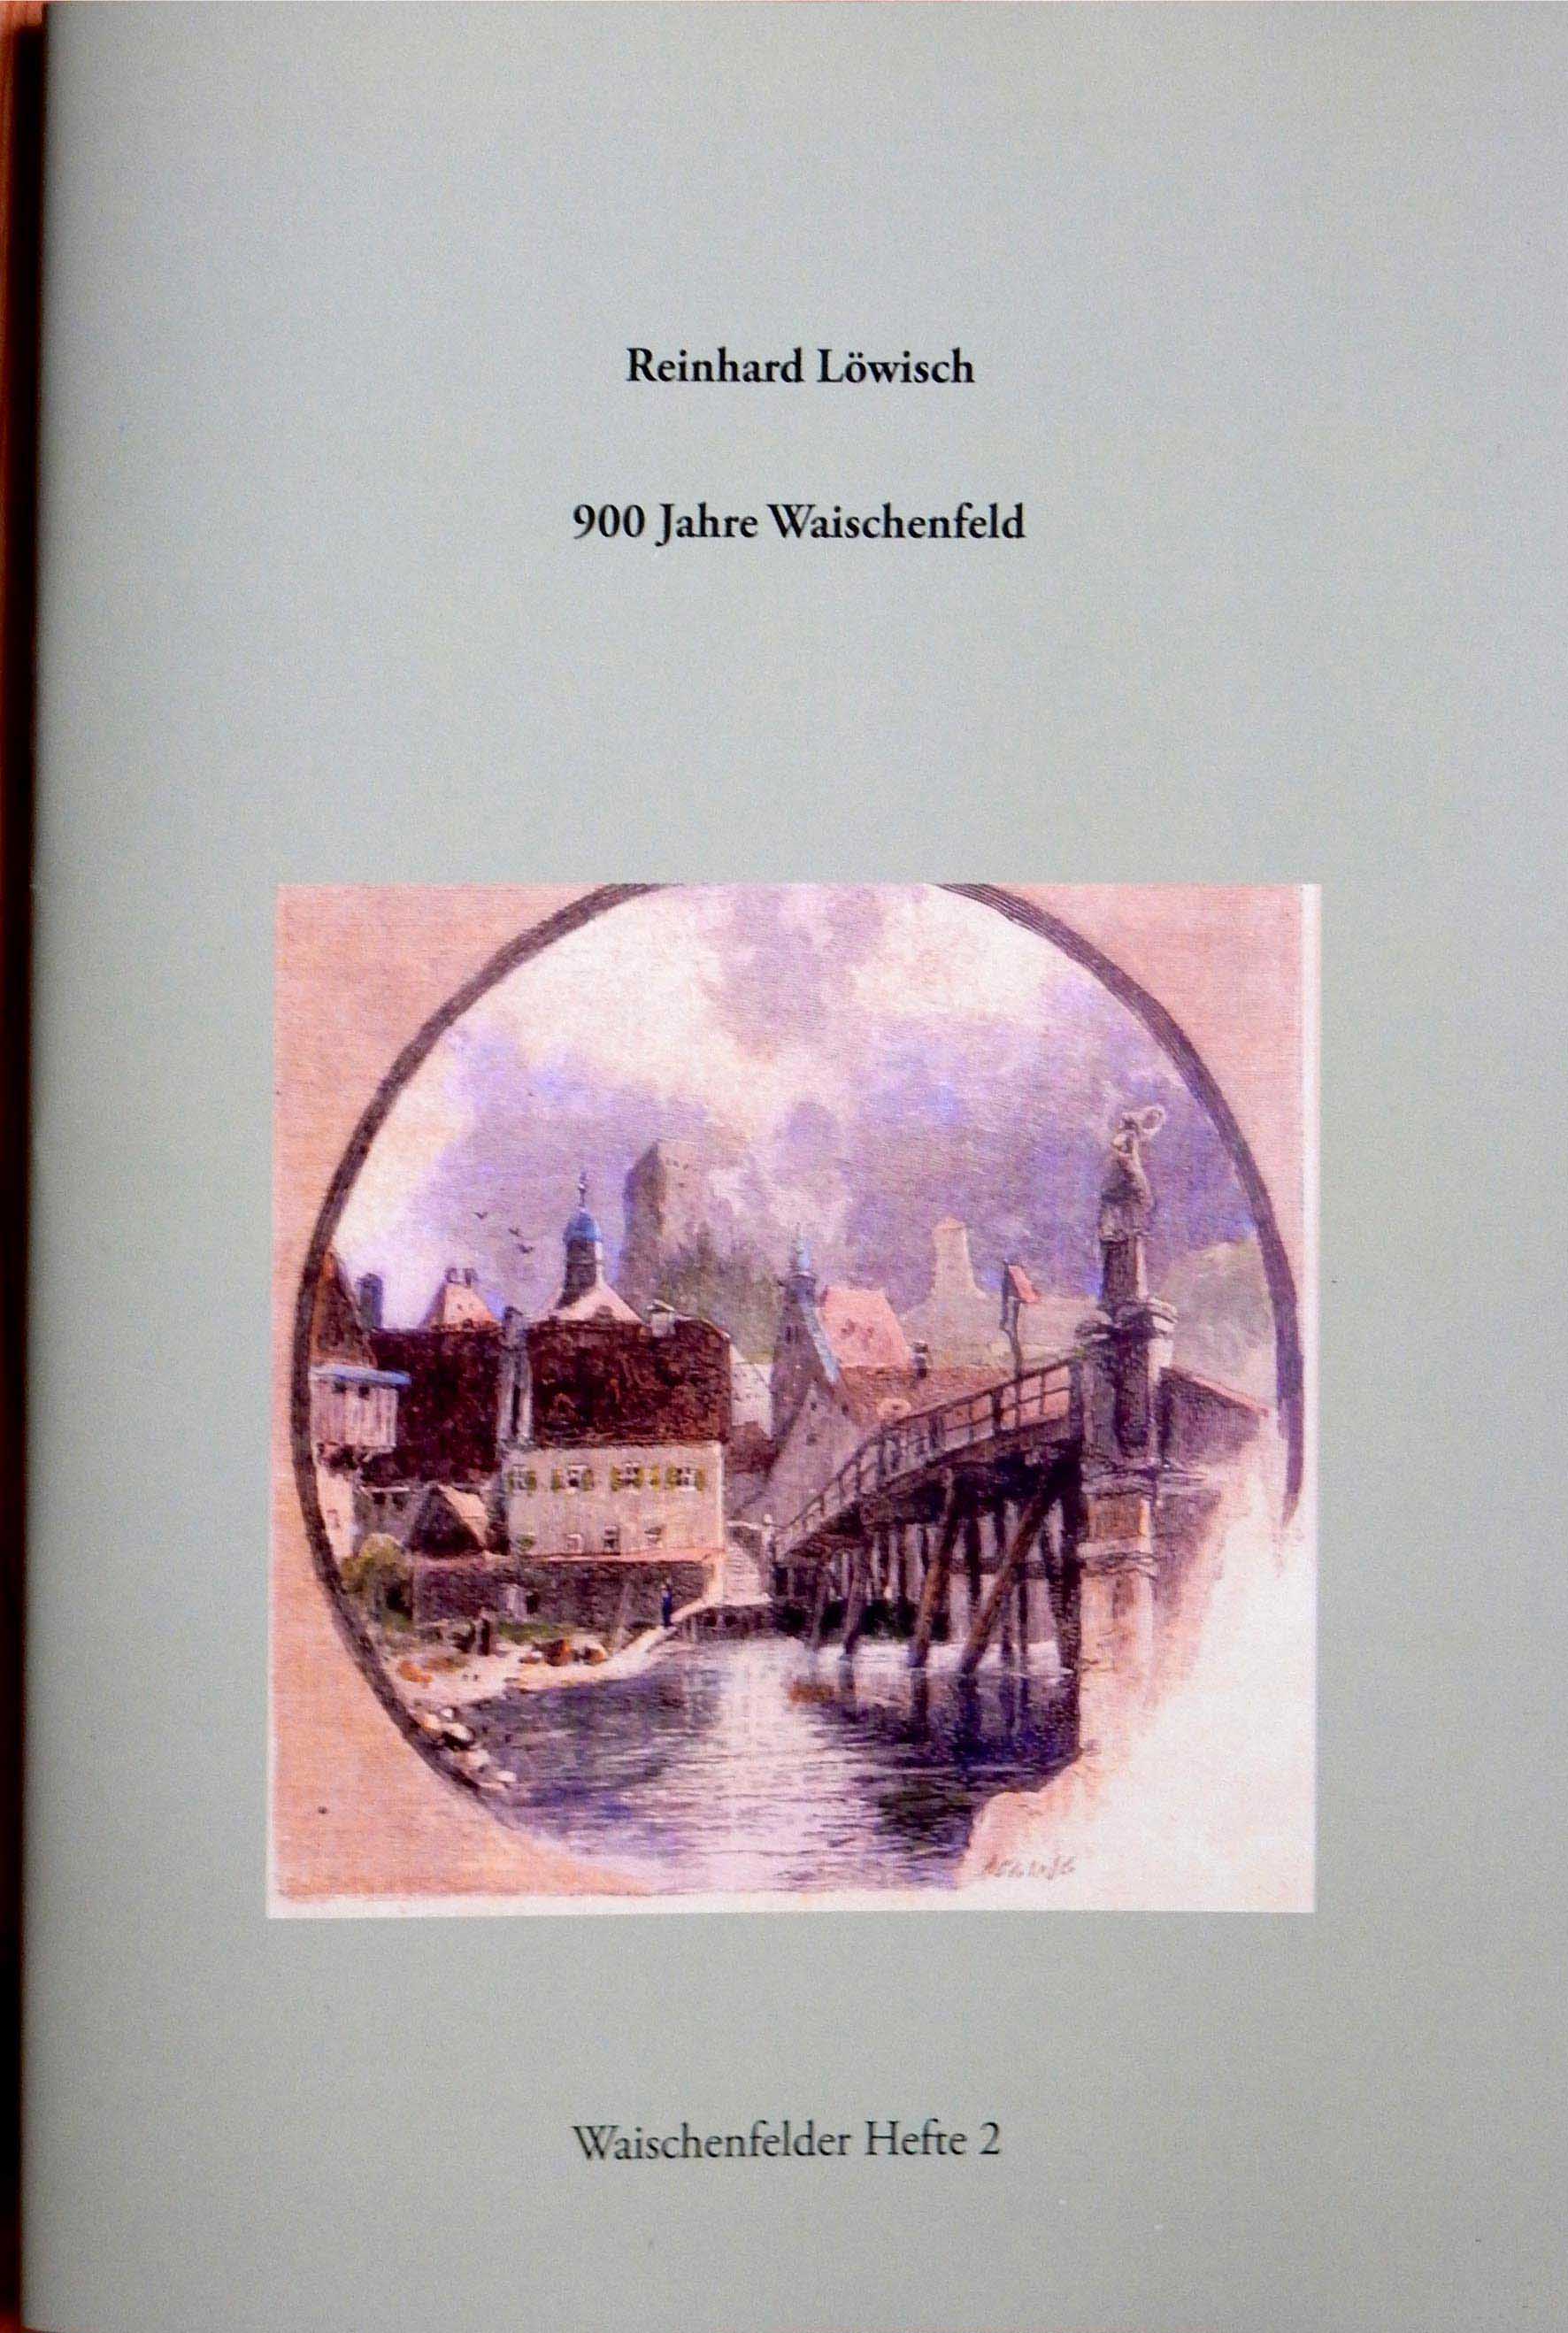 Heft 2 behandelt das Thema 900 Jahre Waischenfeld